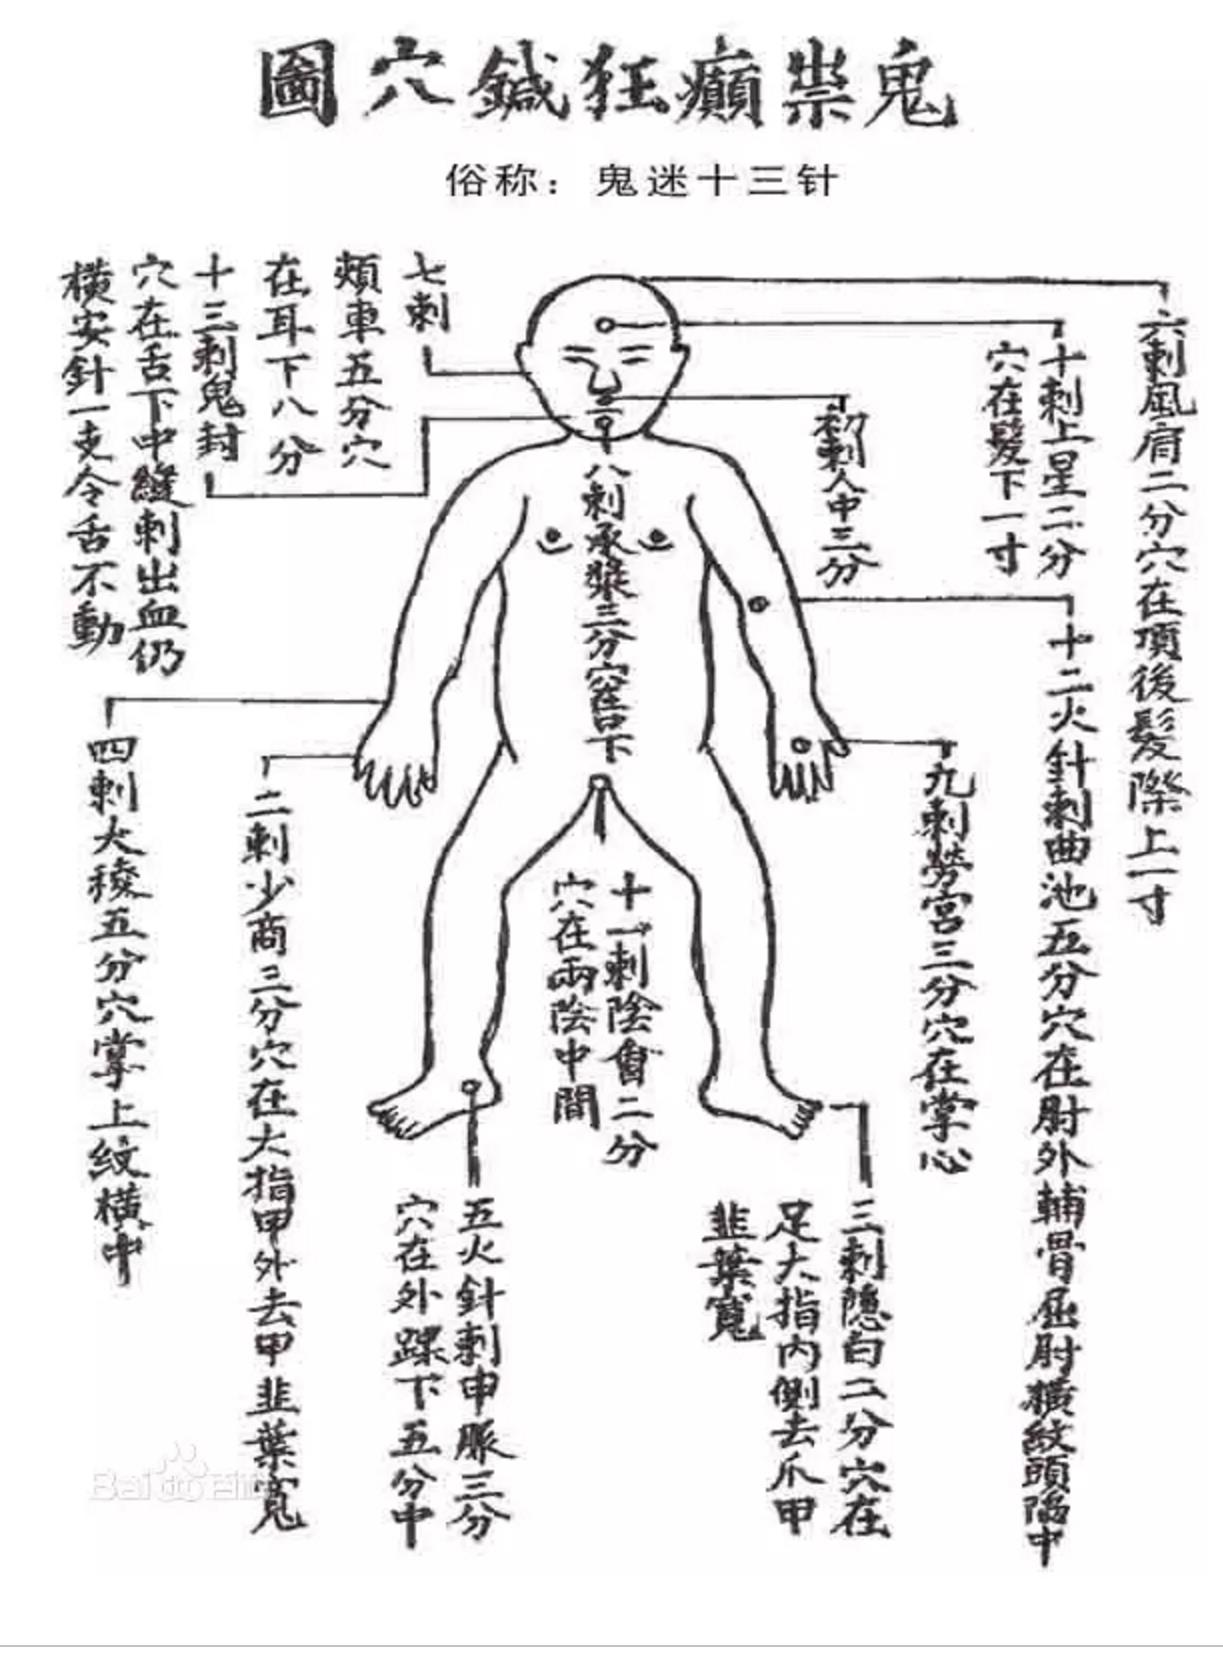 倪海厦鬼门十三针治病案例(图1)